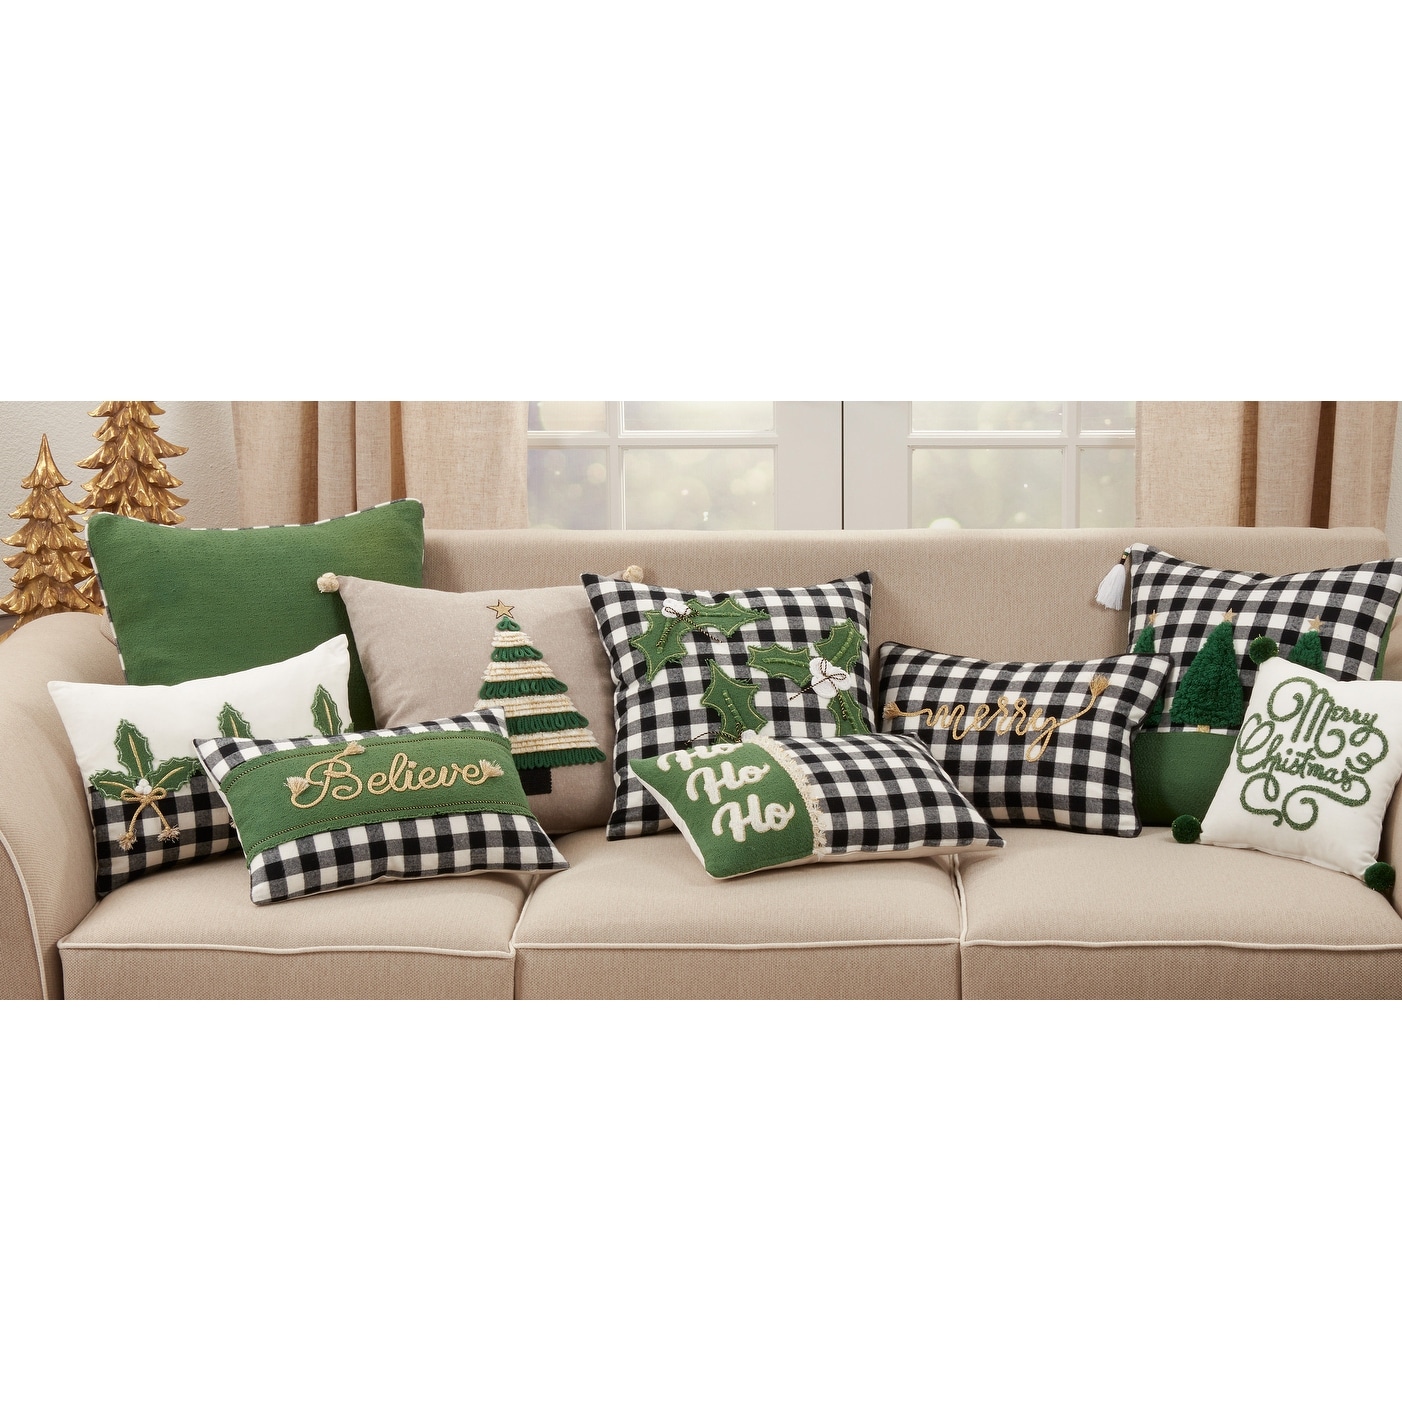 Chenille Christmas HO HO HO Pillow 14x22